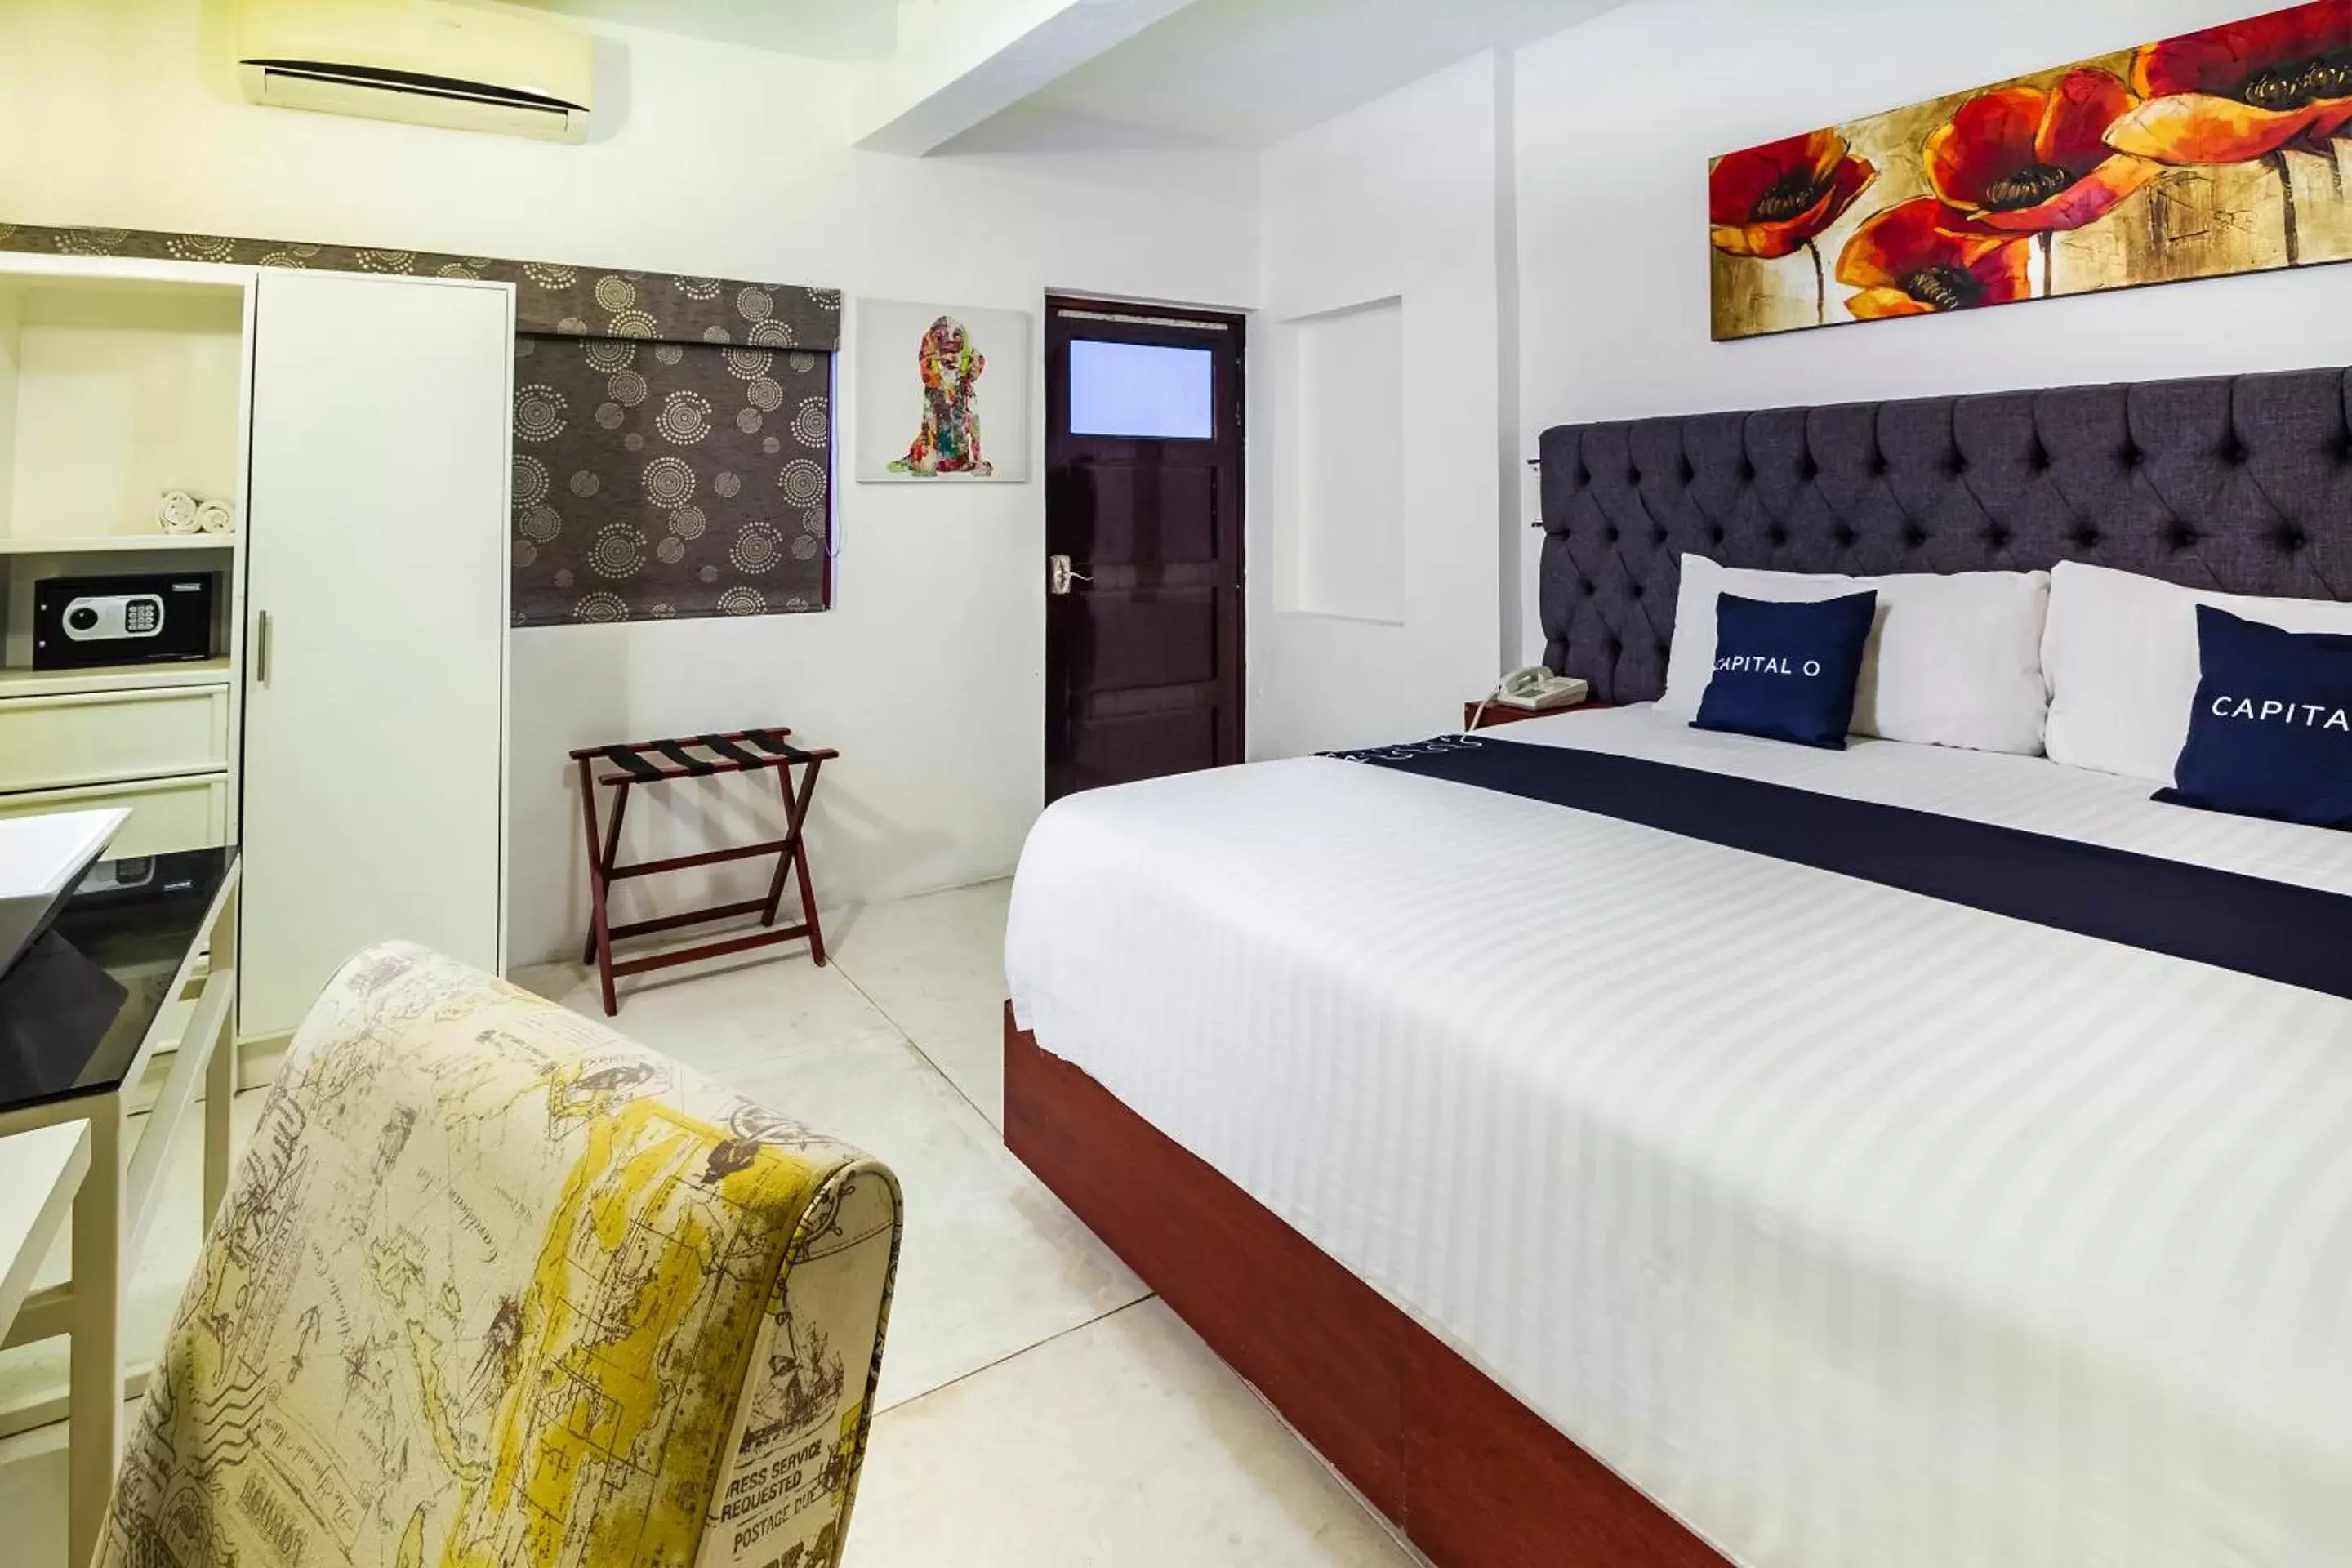 Bedroom, Bed in Capital O Hotel 522, Puerto Vallarta